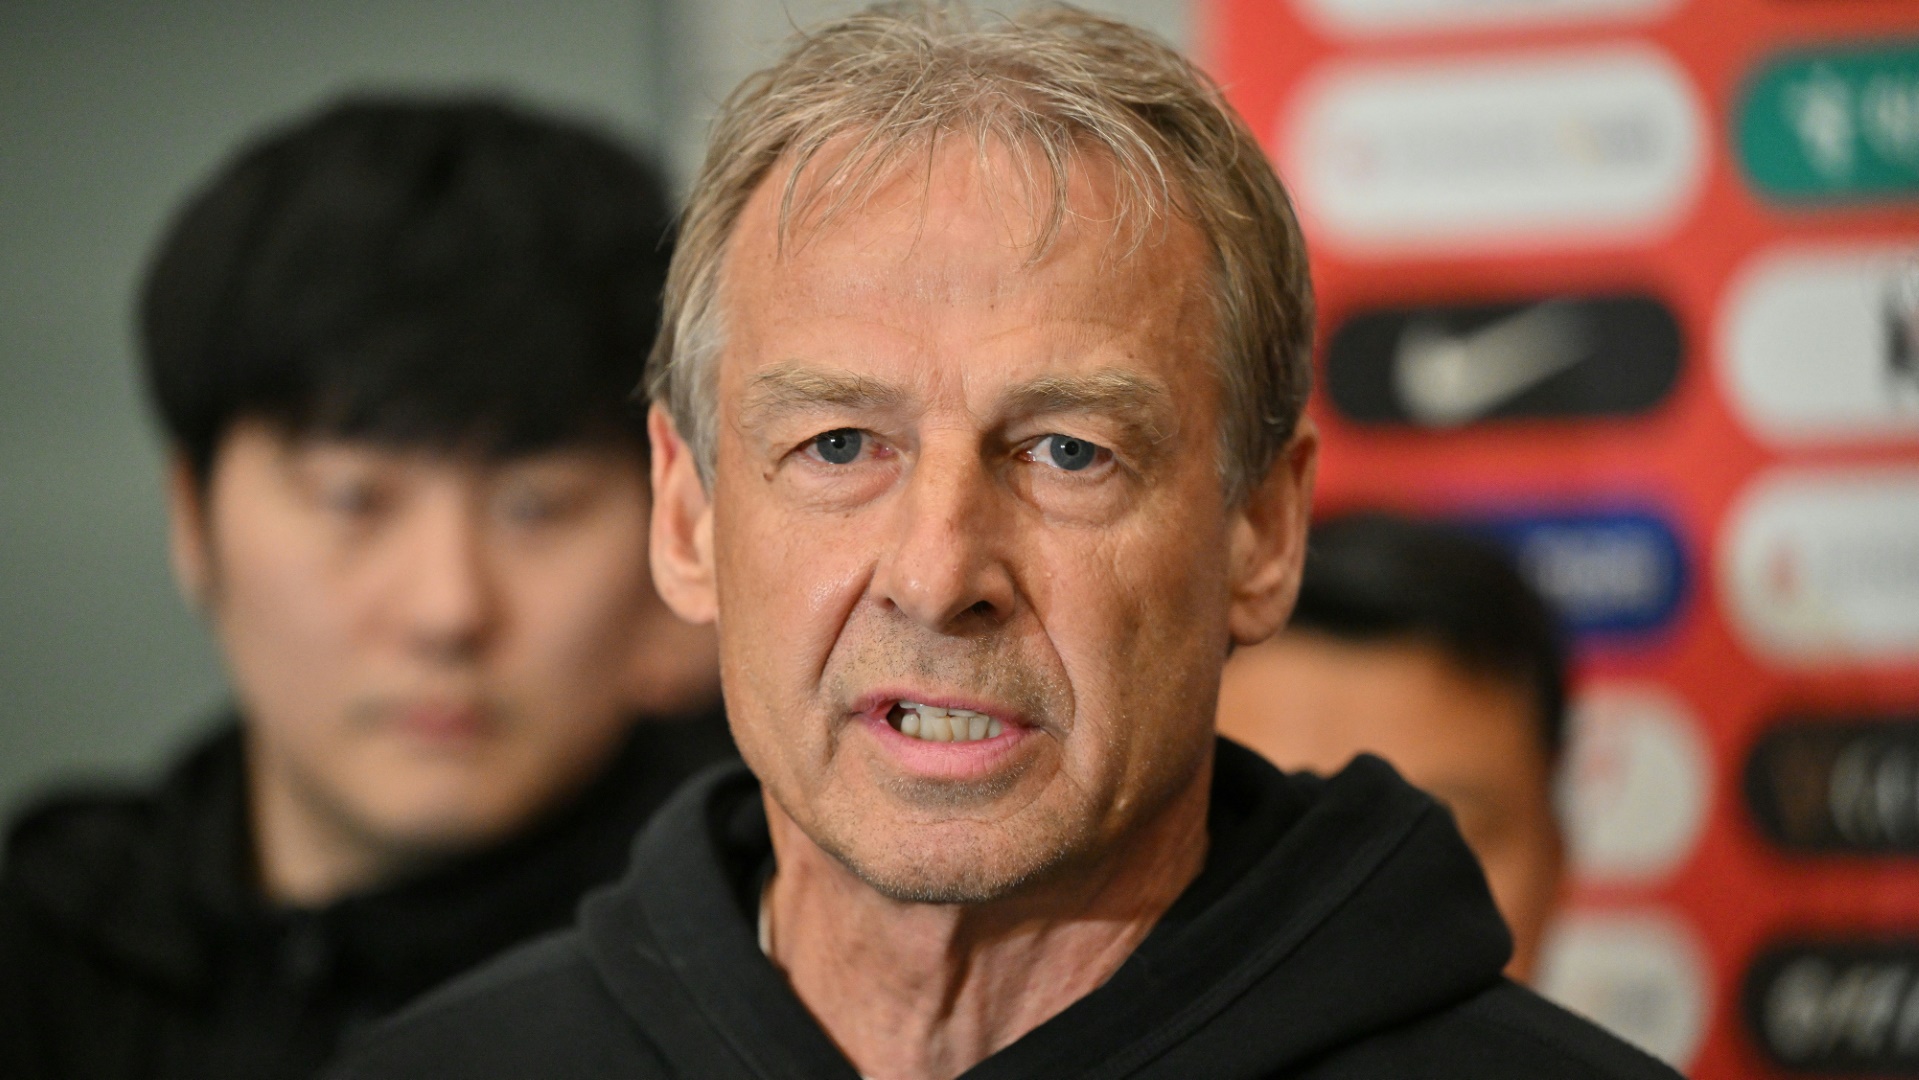 Klinsmann über Bayern: Hoeneß "zieht die Fäden"